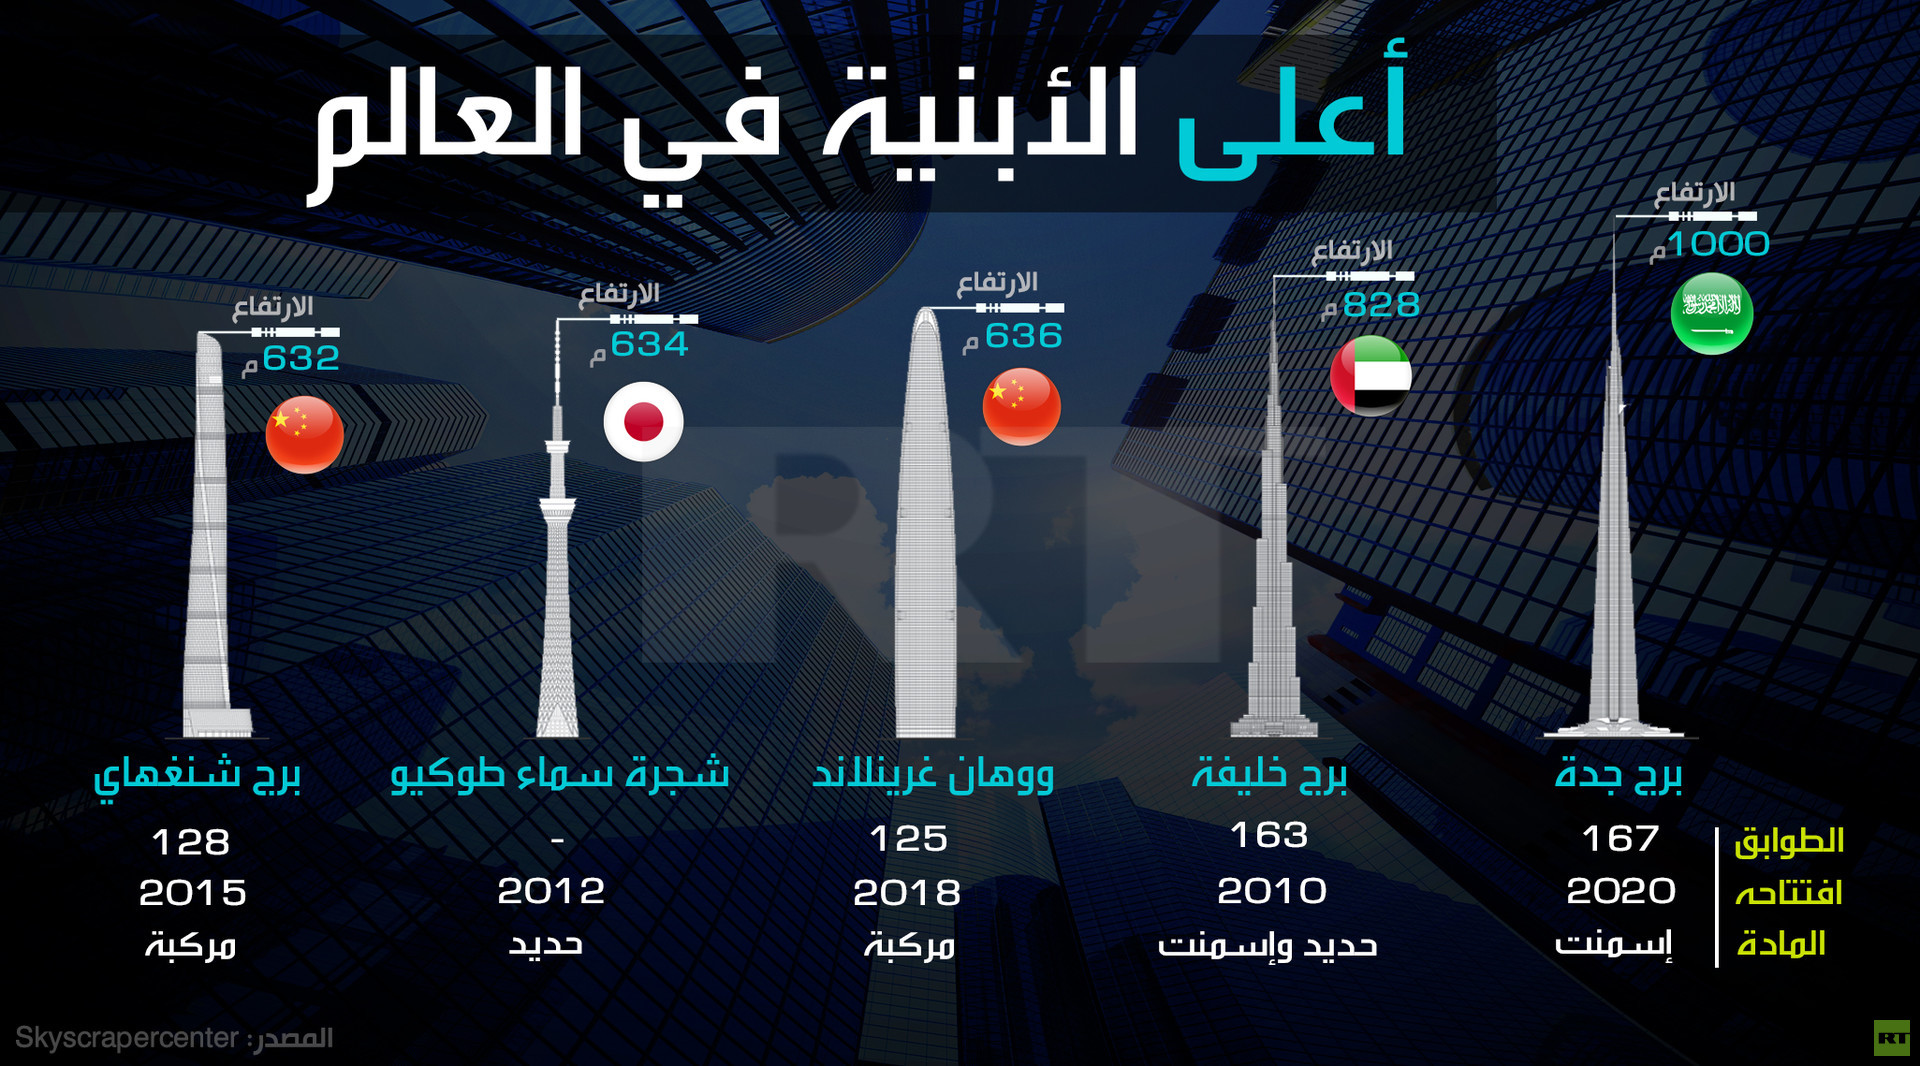 إنفوجرافيك.. عام 2020 برج خليفة لن يكون الأعلى في العالم